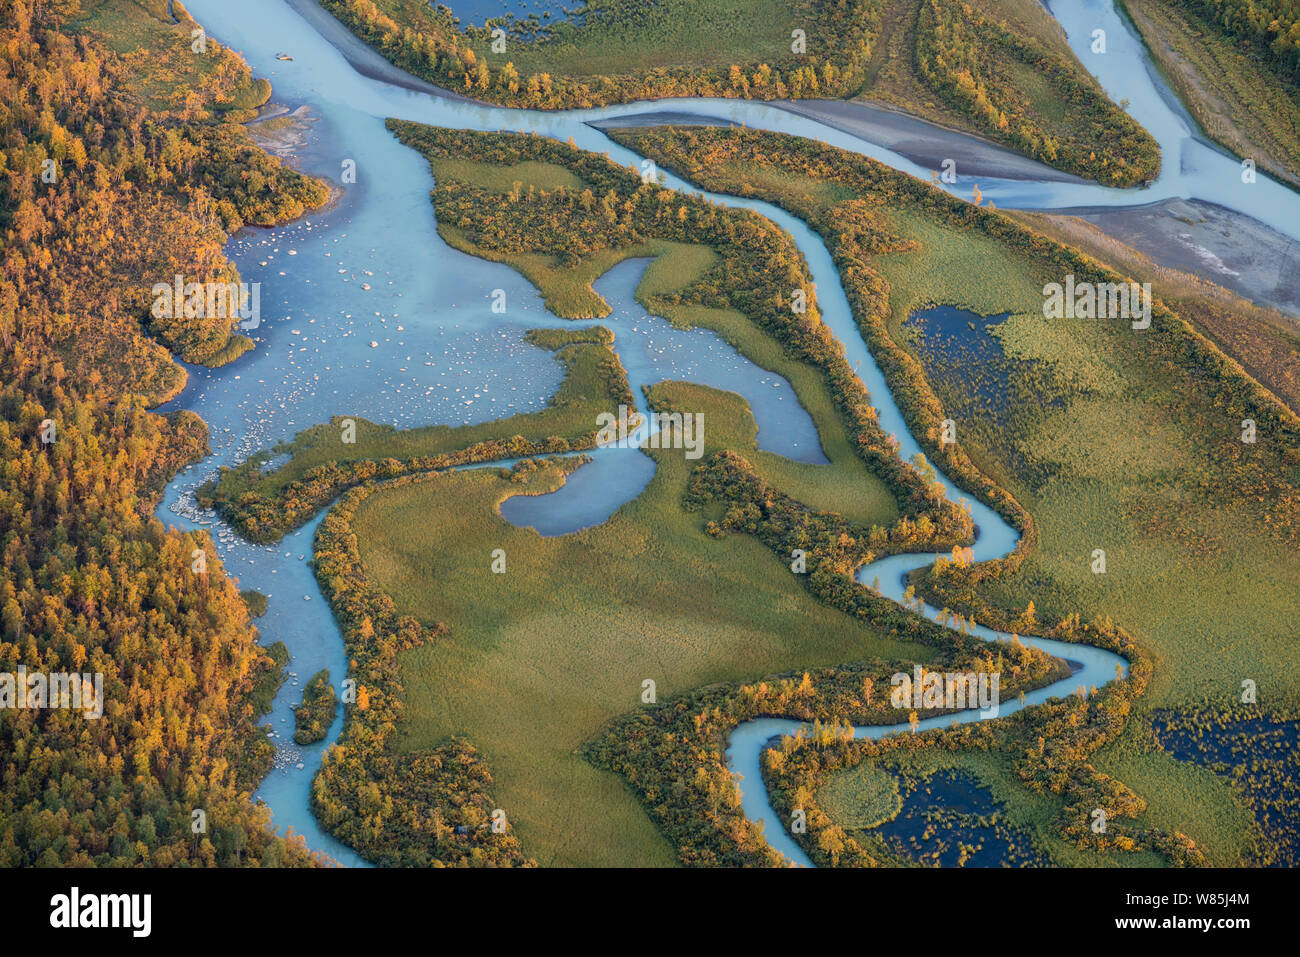 Le delta du Laitaure dans le Sarek National Park. Laponia Patrimoine mondial, en Laponie suédoise, la Suède. Septembre 2009. Banque D'Images